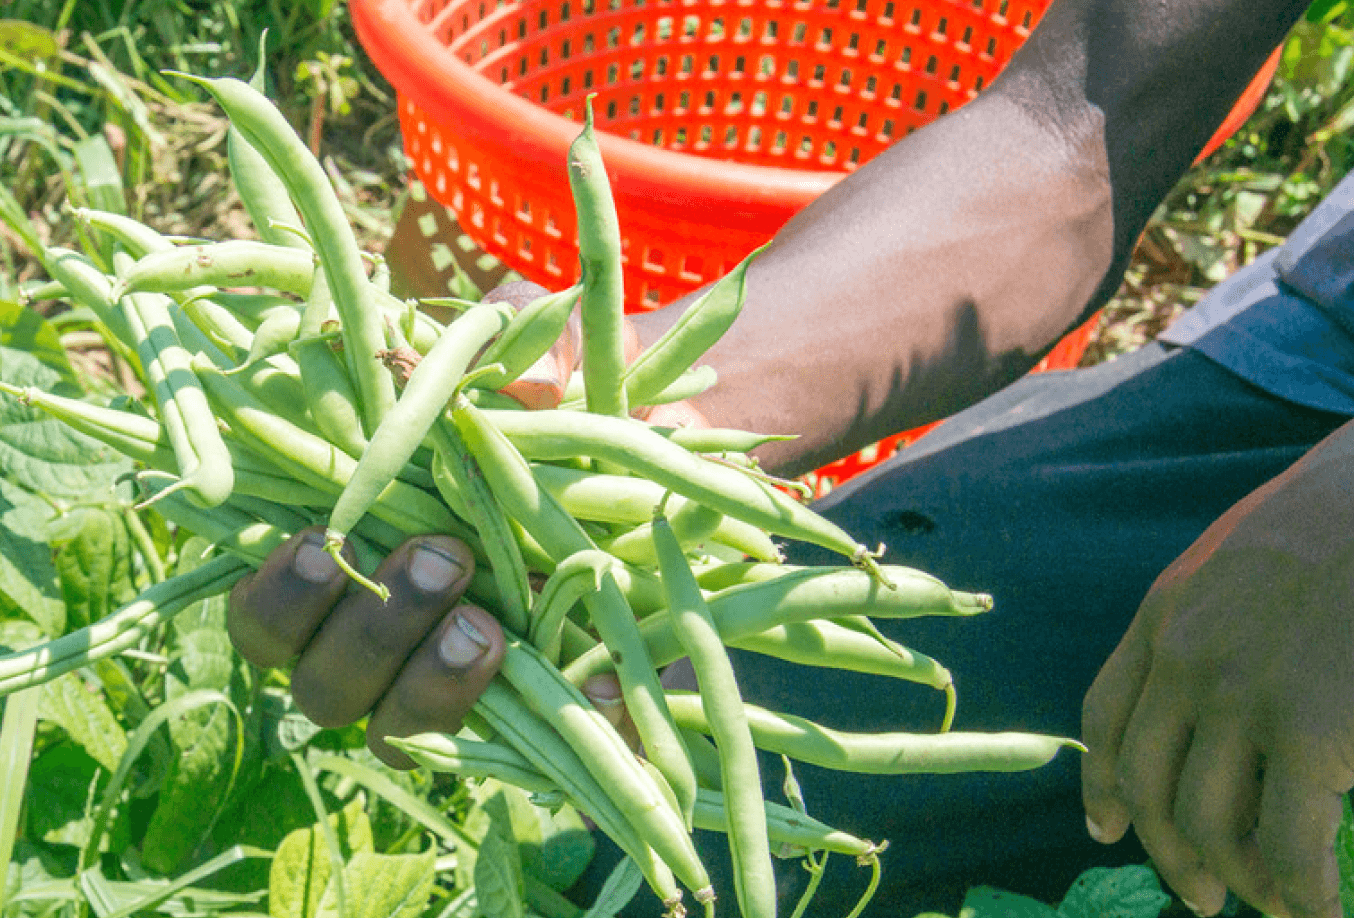 Farmer holding green beans